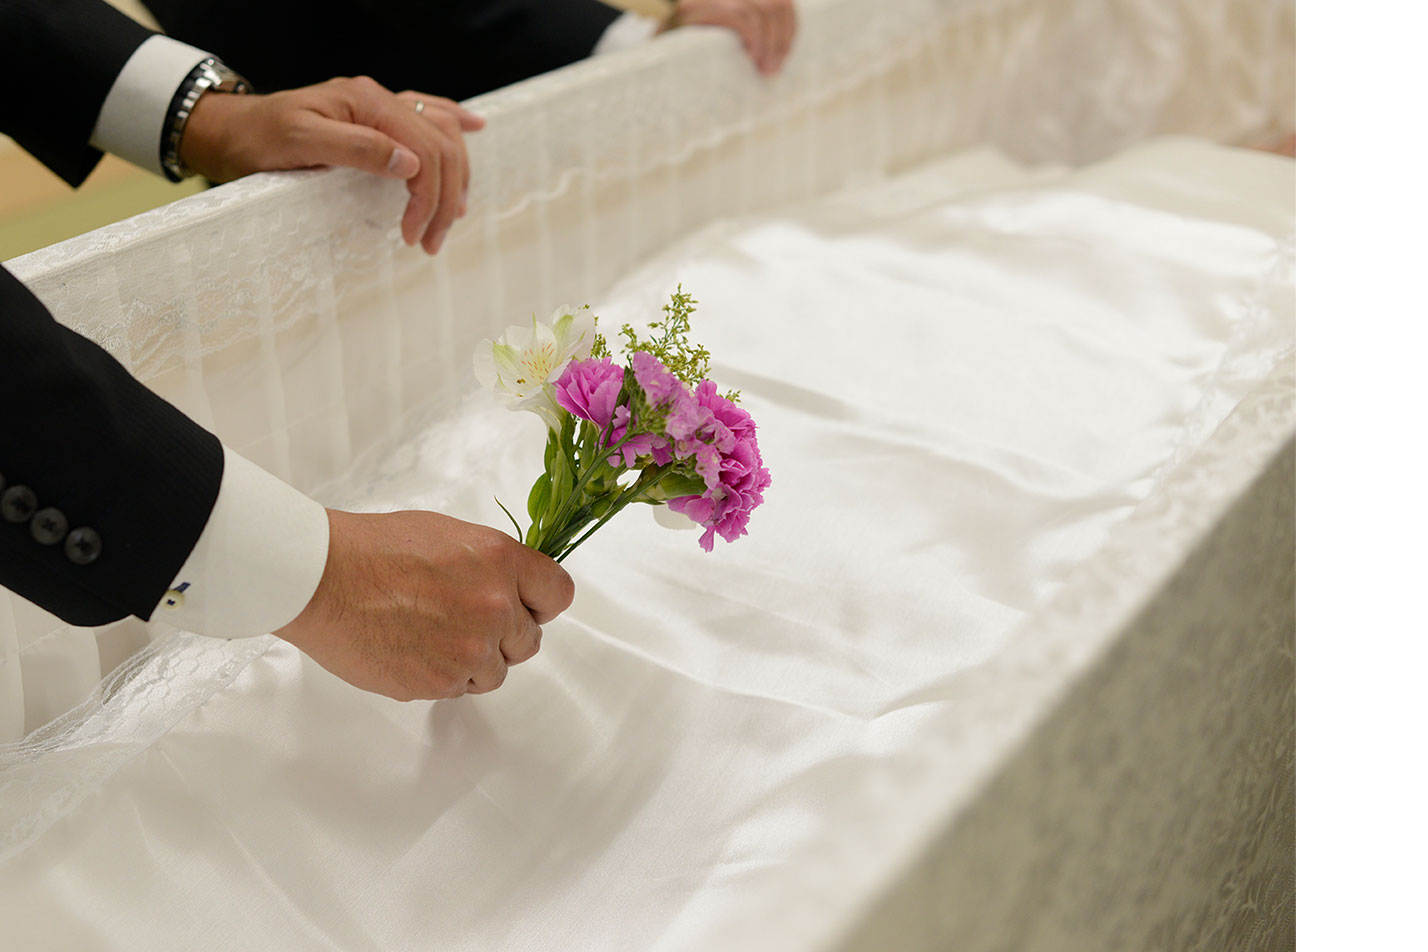  高松市における家族葬の流れとは？のイメージ画像